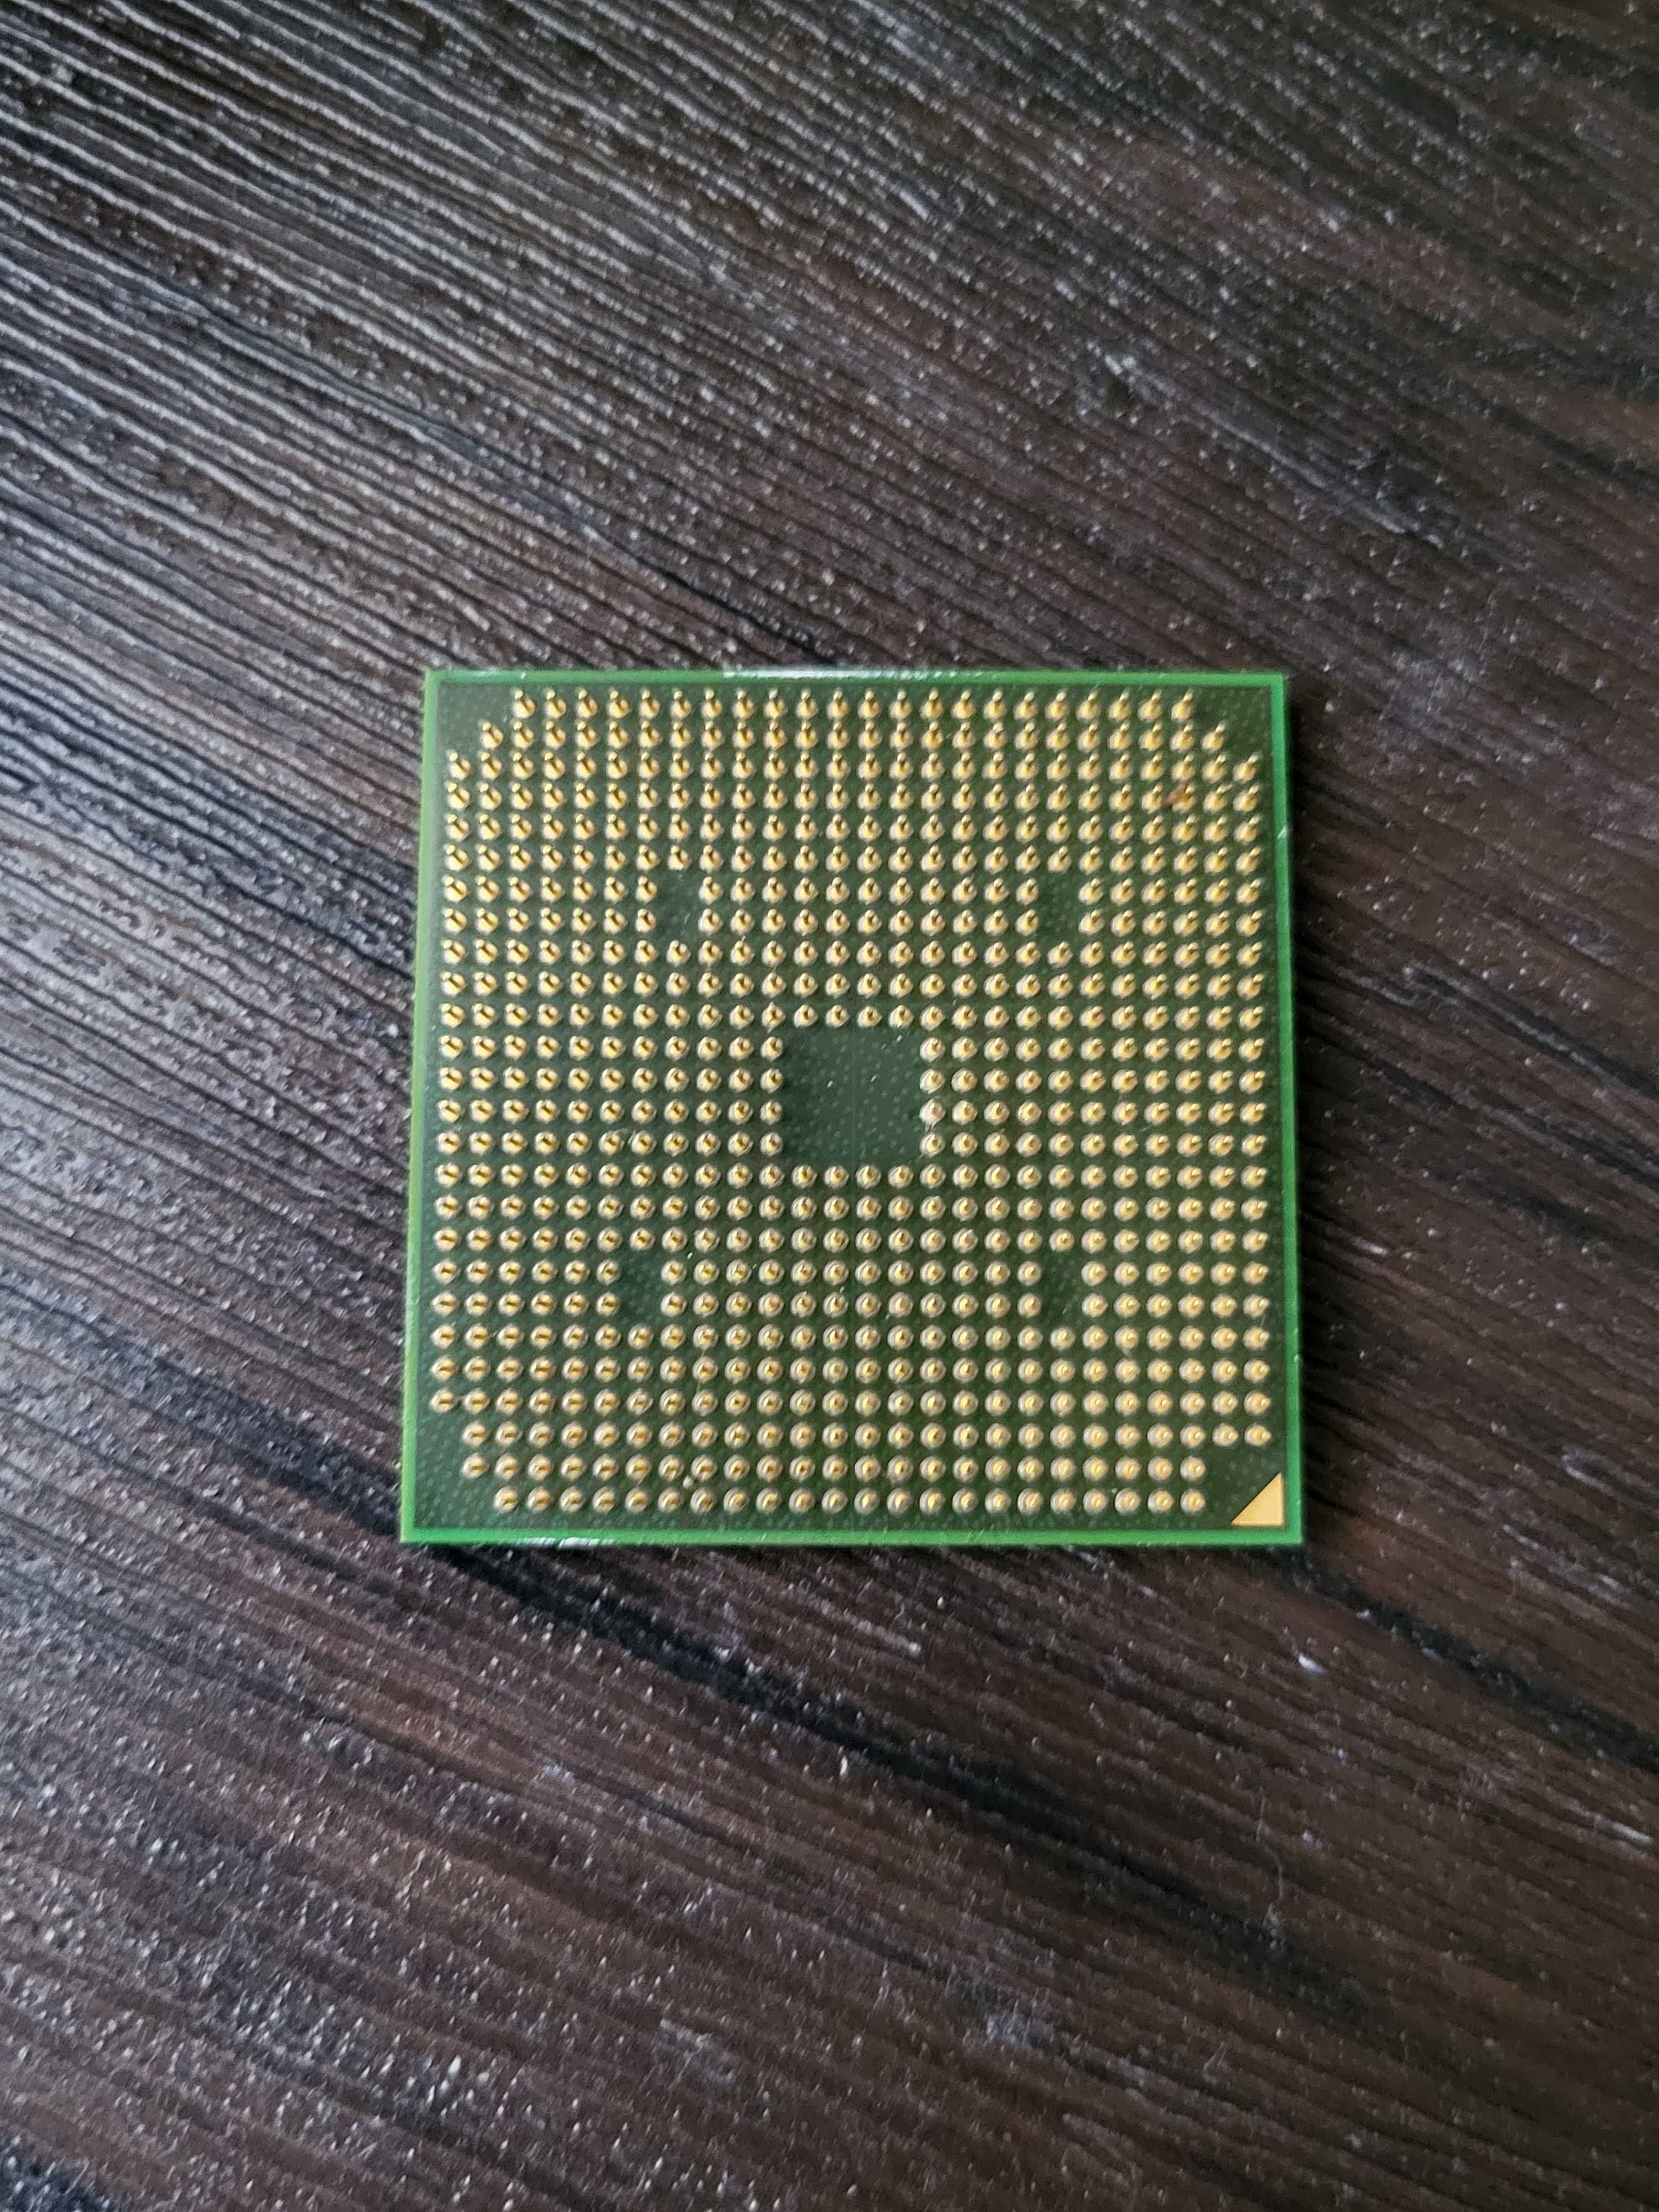 Процессор – AMD Turion X2 Ultra ZM-80 / 2.1GHz "(TMZM80DAM23GG)" S1G2!